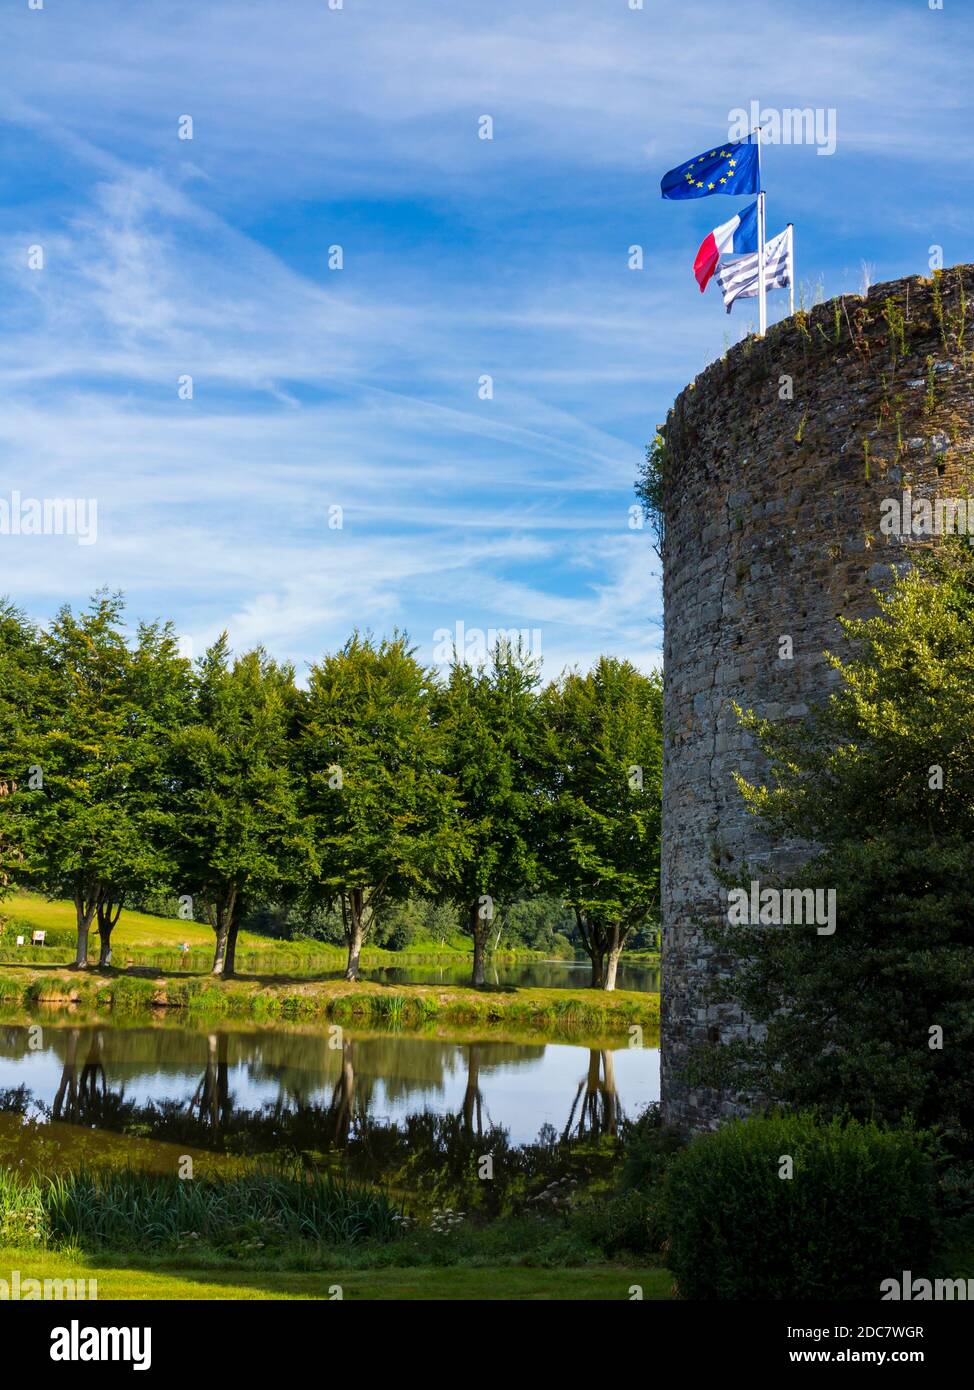 Torre di pietra e viale di alberi riflessi in acqua a le Haut-Corlay nella Bretagna occidentale Francia con bandiere francesi e dell'Unione europea che volano su un palo. Foto Stock